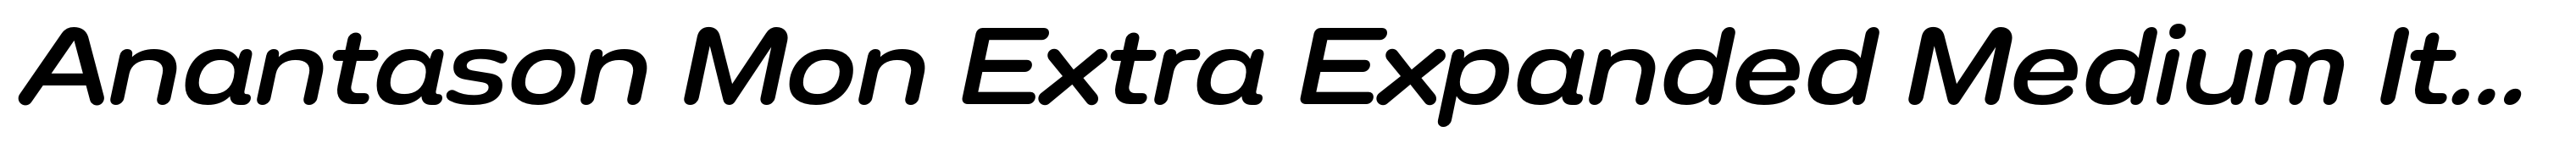 Anantason Mon Extra Expanded Medium Italic